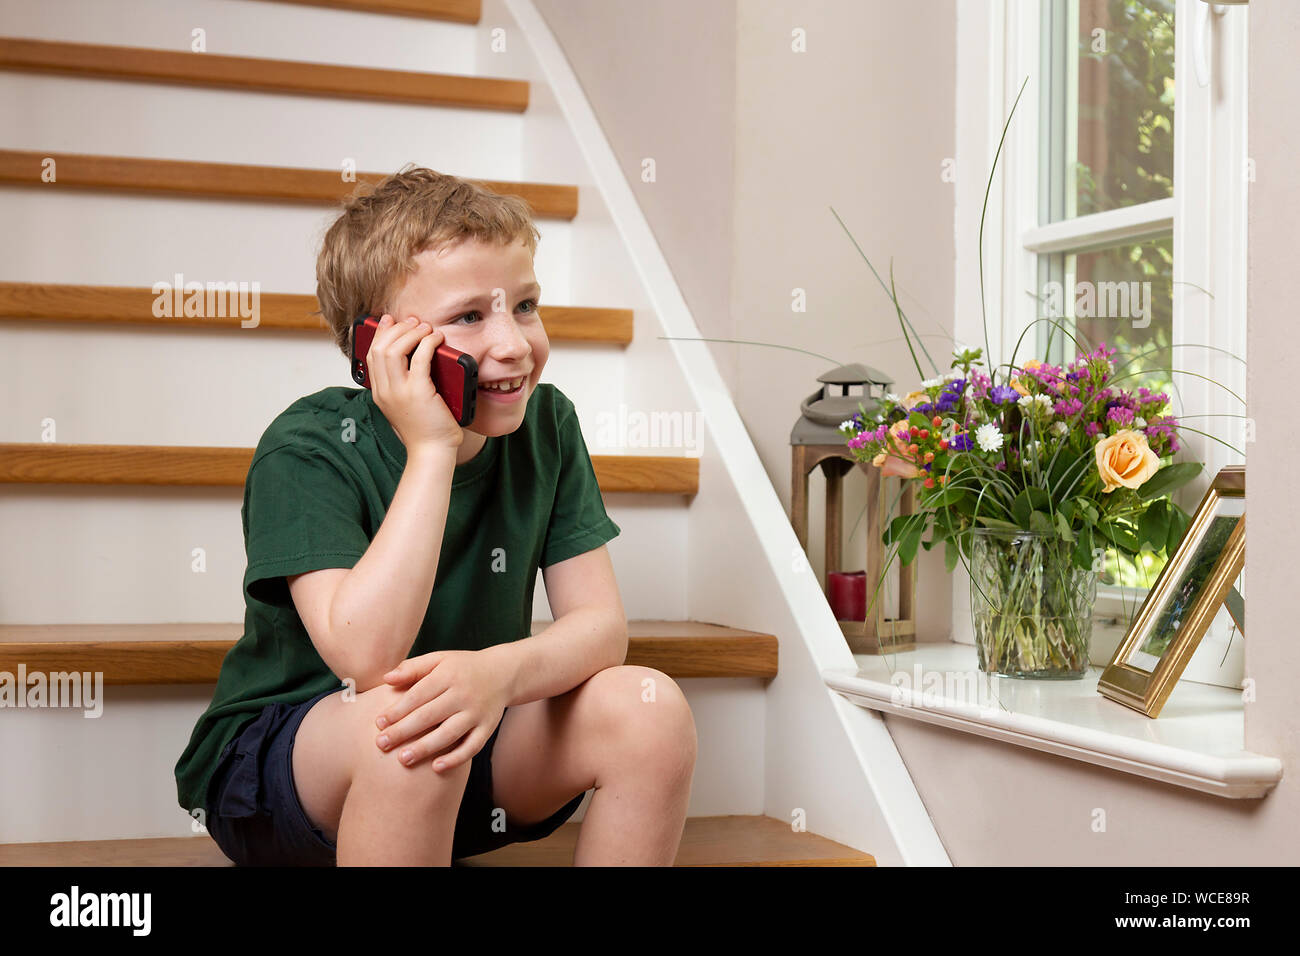 Garçon, 8 ans, faisant appel à la maison avec le smartphone, Allemagne Banque D'Images